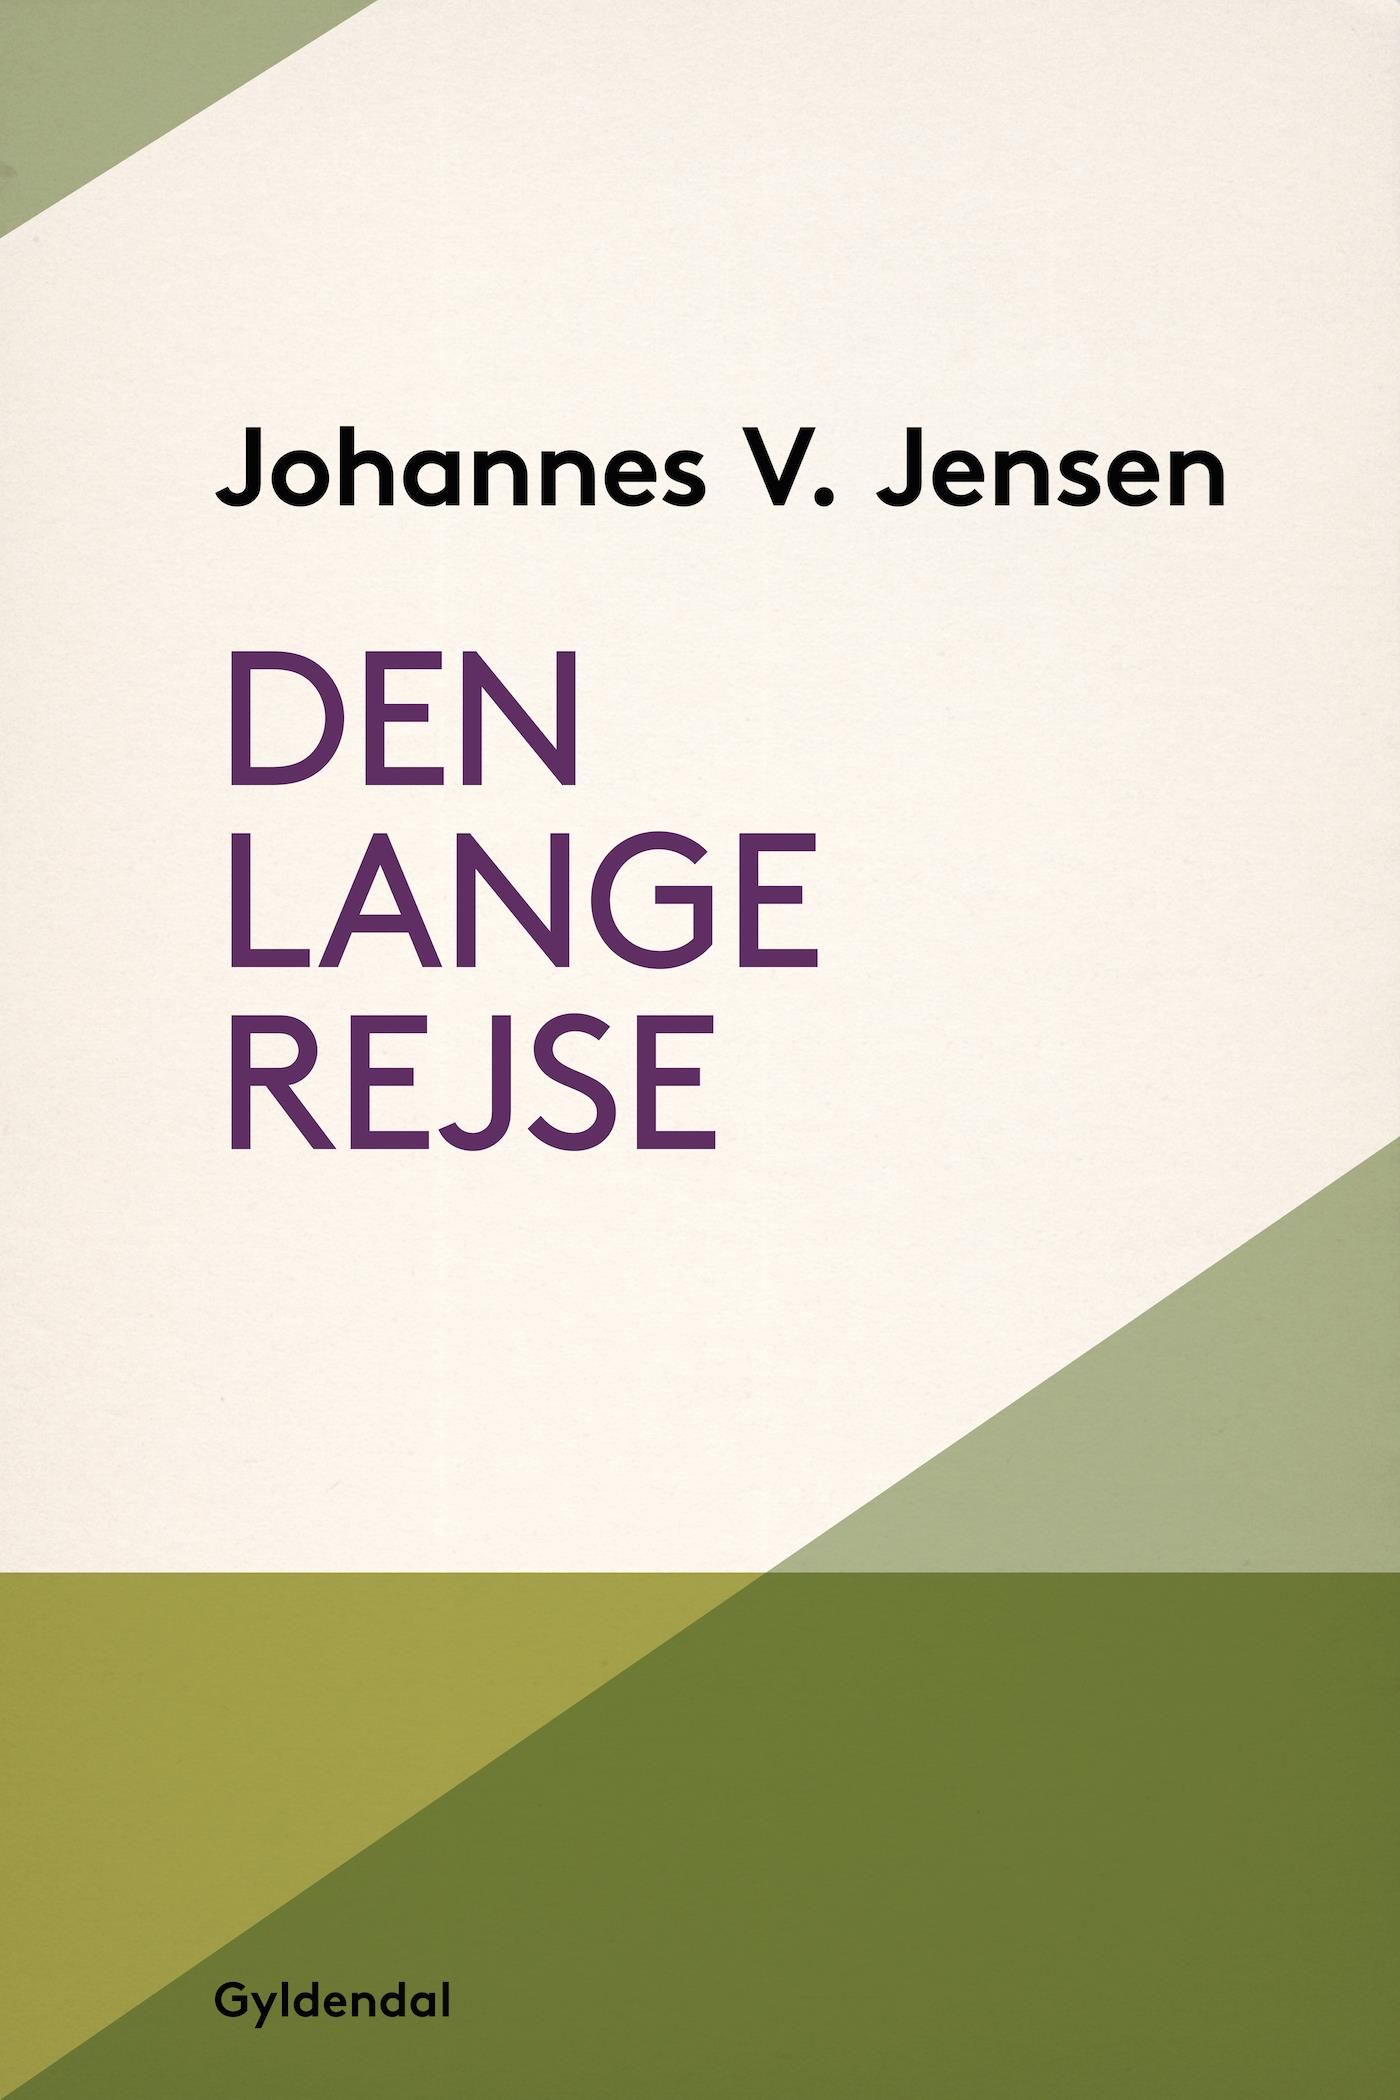 Den lange rejse, e-bok av Johannes V. Jensen